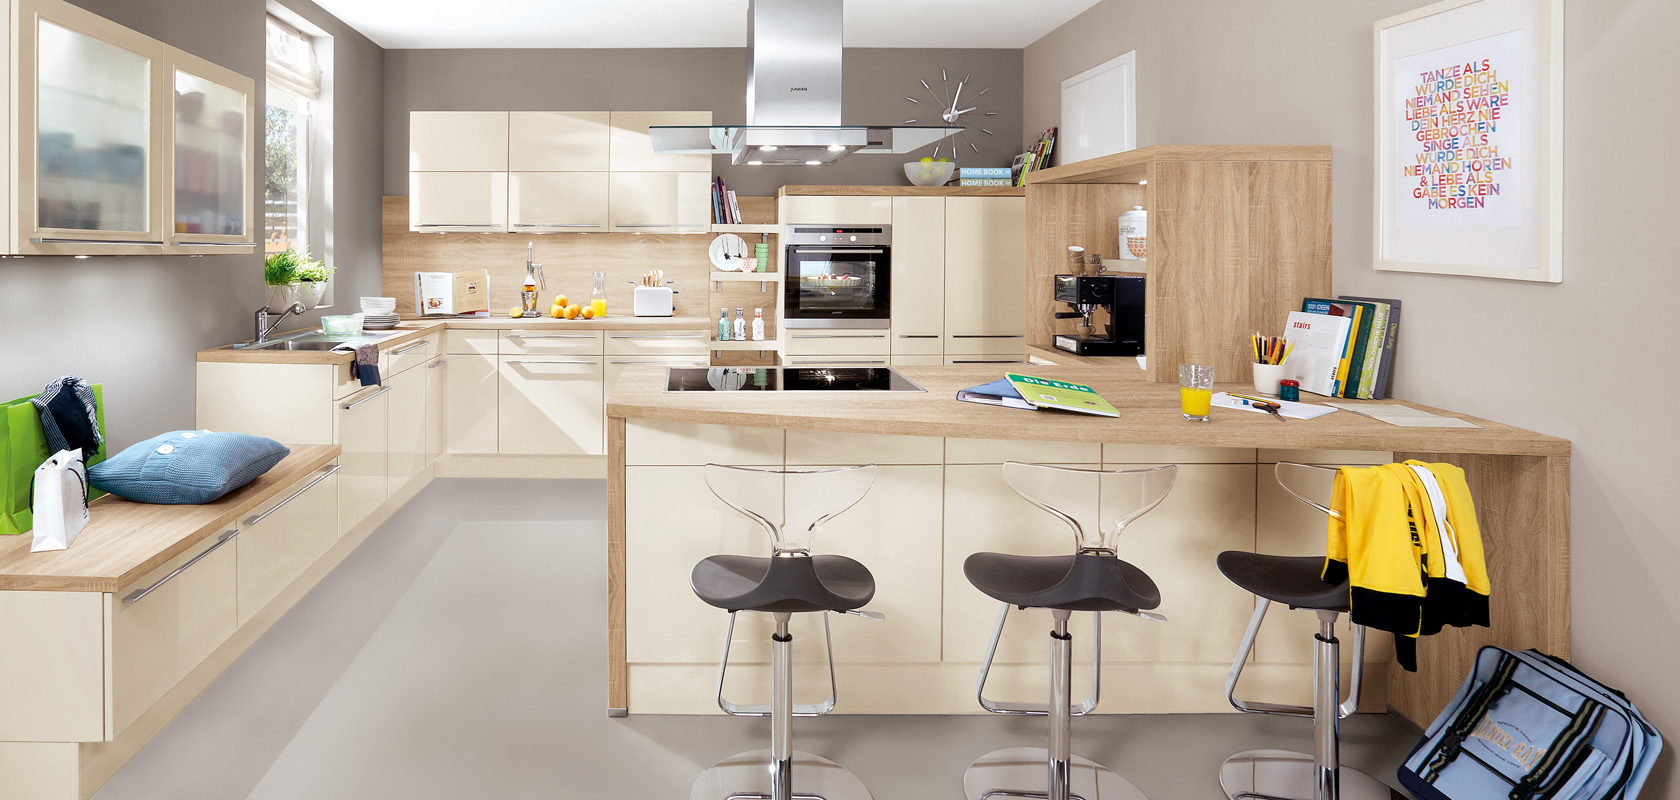 Interior de cocina moderna que muestra un diseño elegante con gabinetes de madera, una isla central, electrodomésticos de acero inoxidable y una acogedora área de asientos con taburetes elegantes.